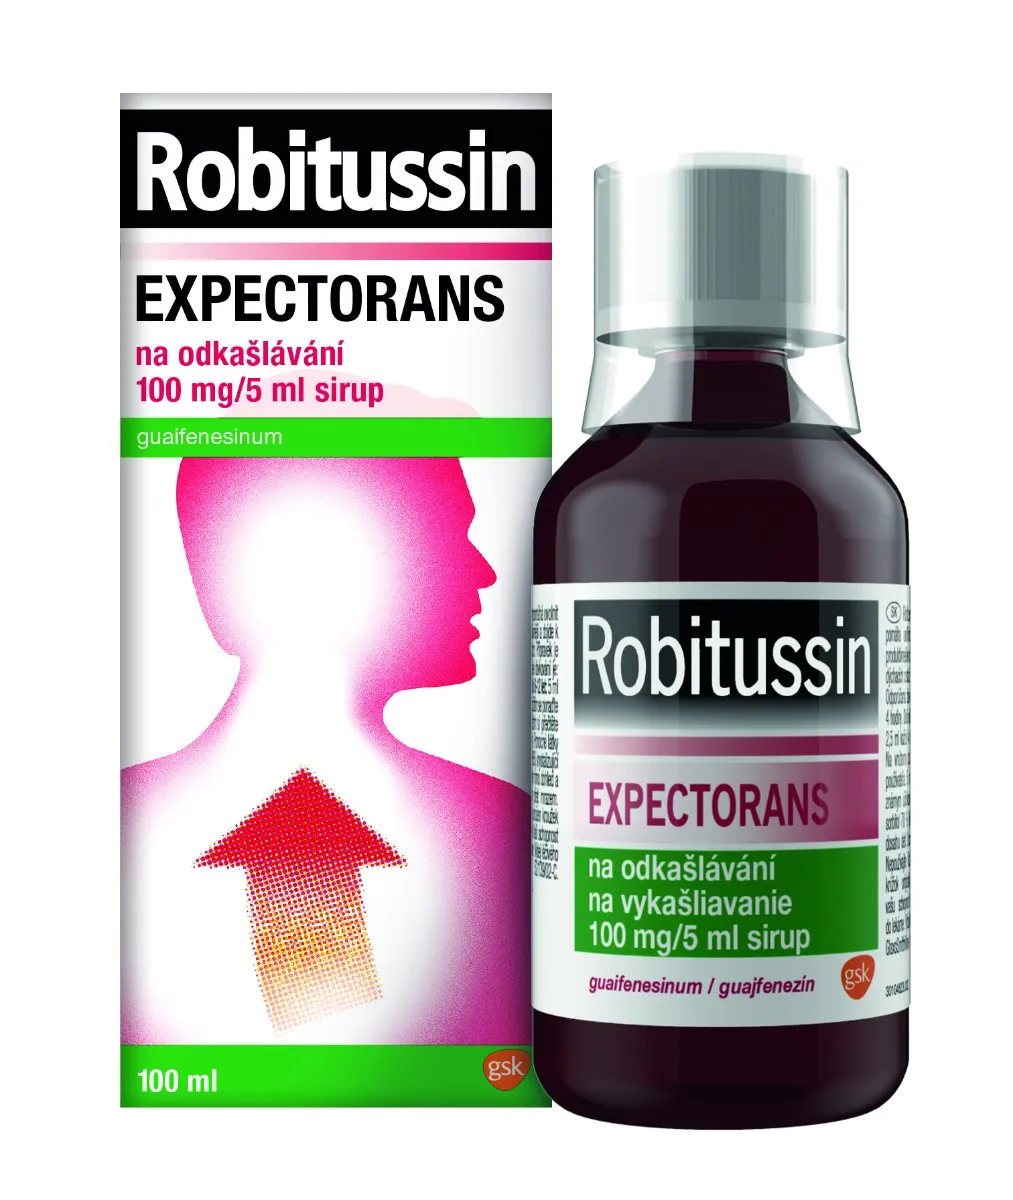 Robitussin Expectorans na odkašlávání 100 mg/5 ml